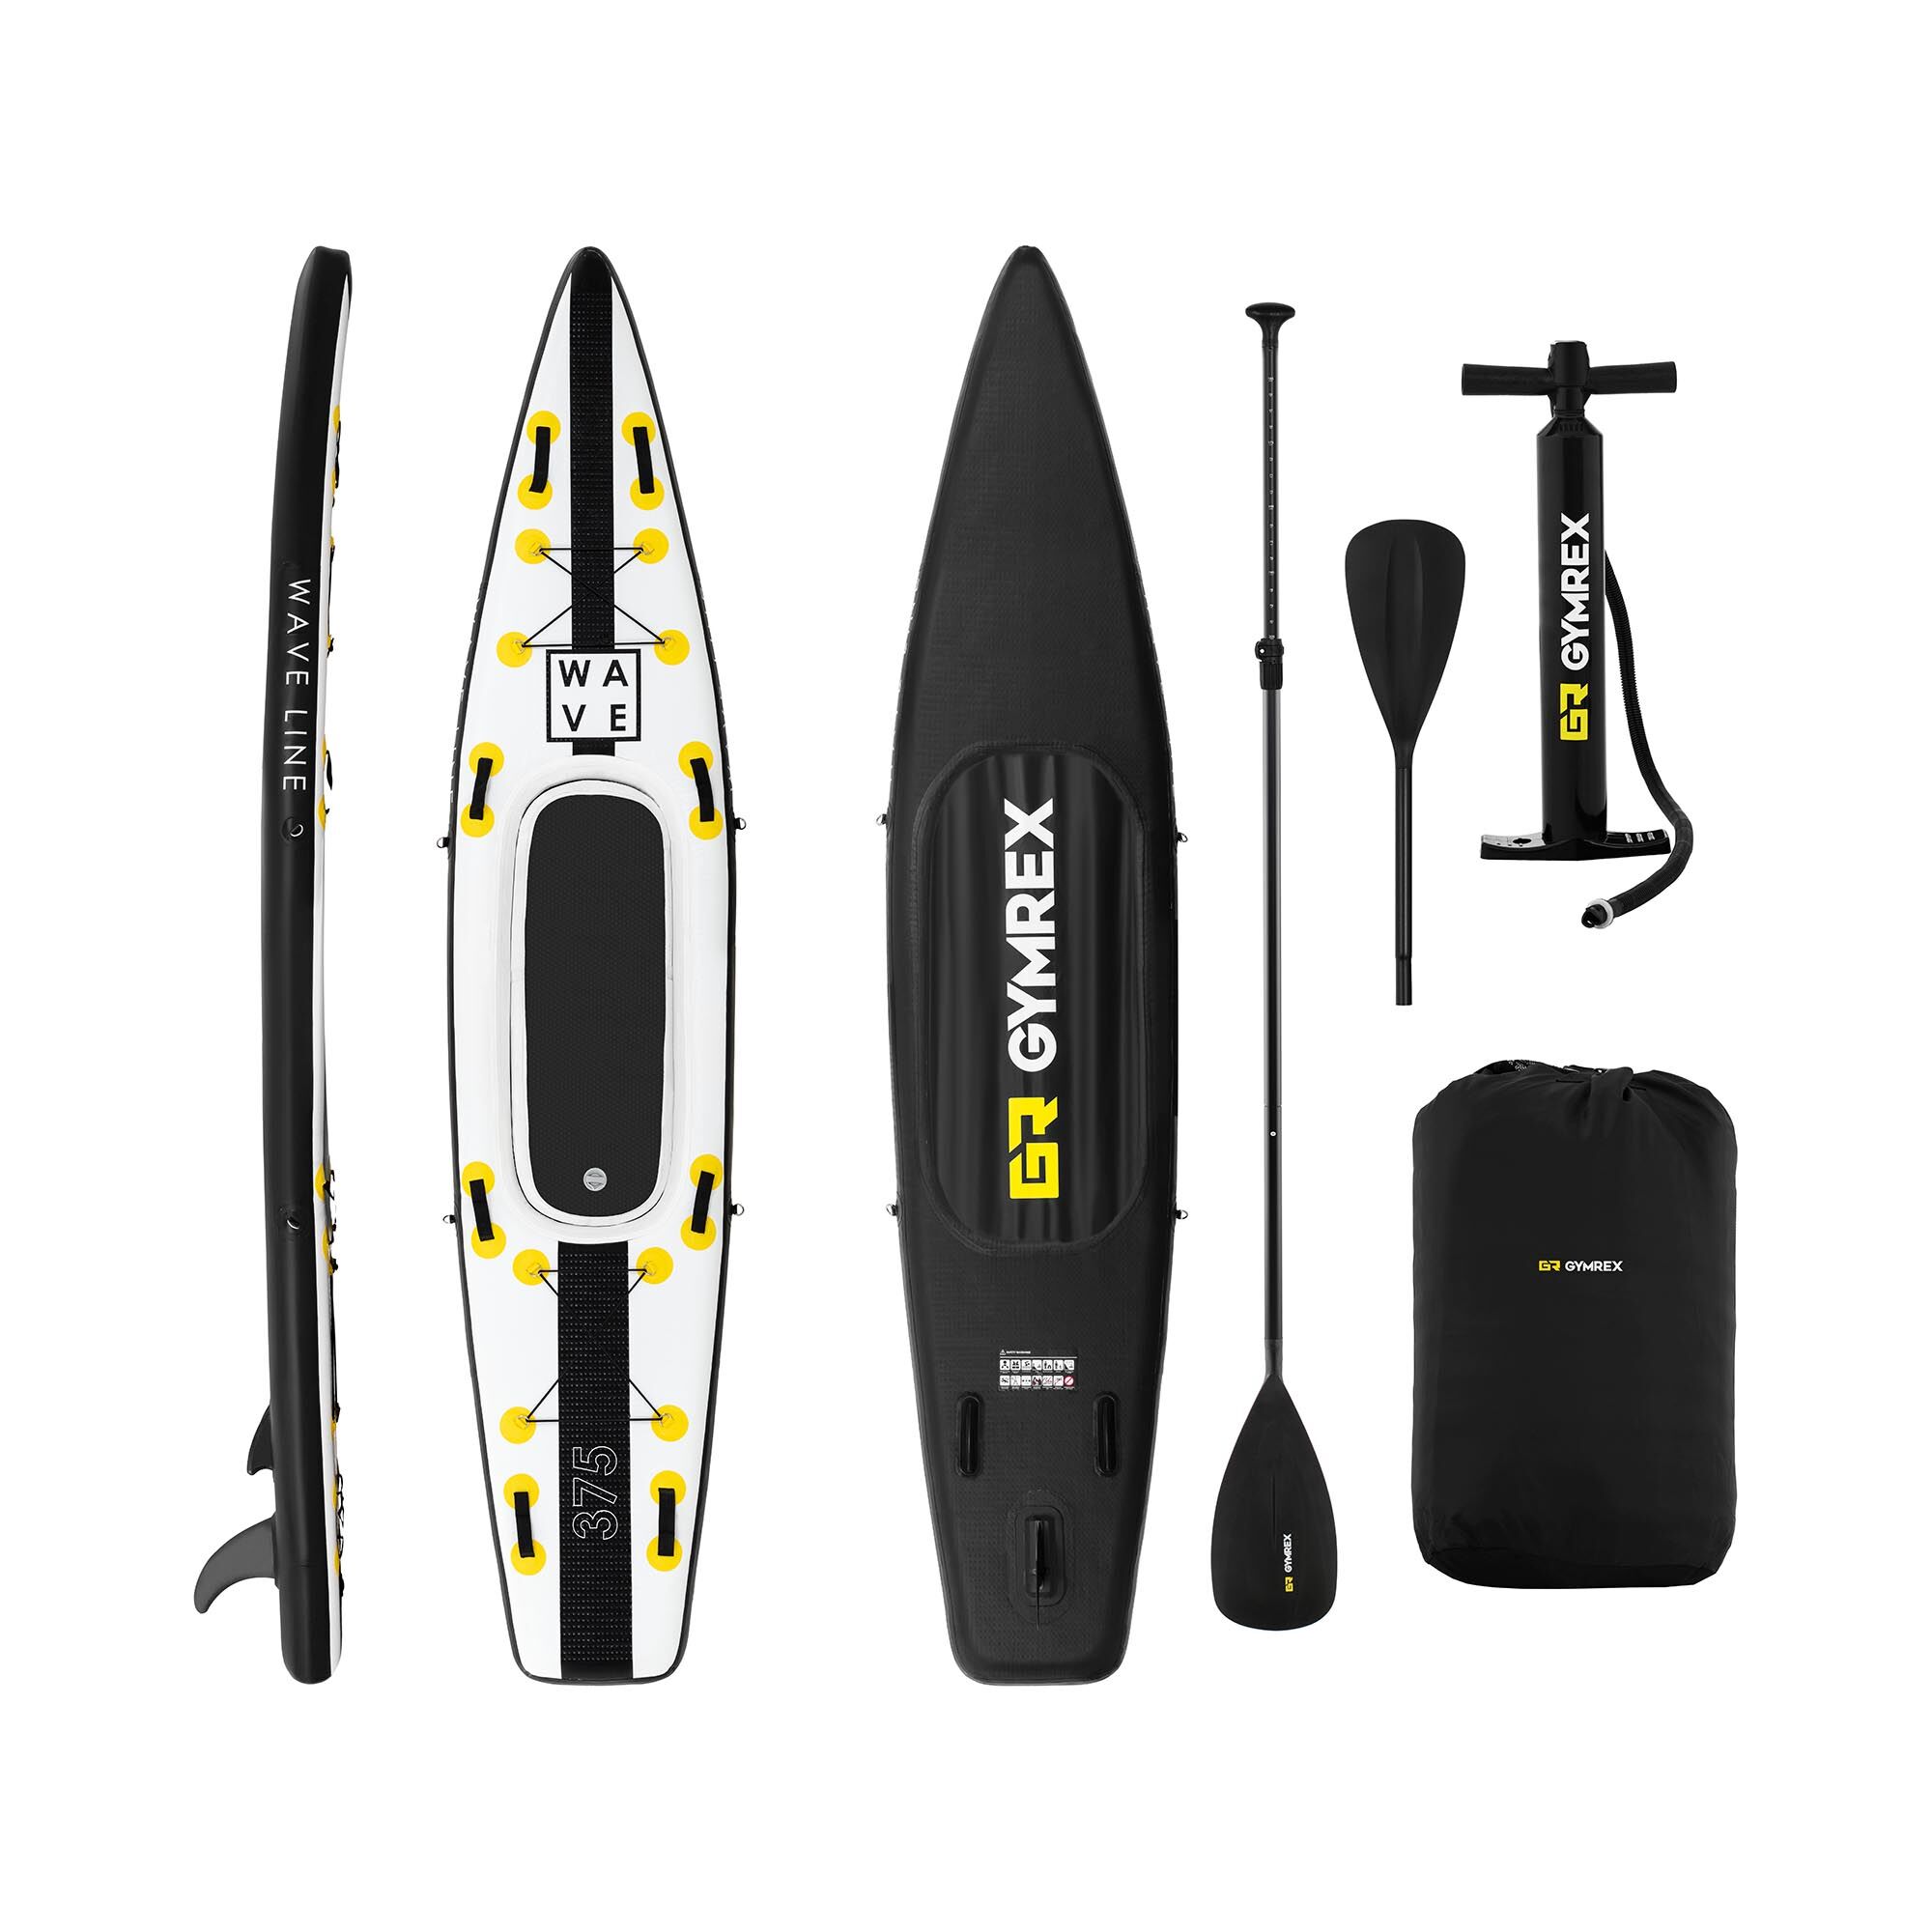 Gymrex Stand up paddle gonflable - 120 kg - Noir/jaune - Kit incluant pagaie, siège et accessoires GR-SPB375